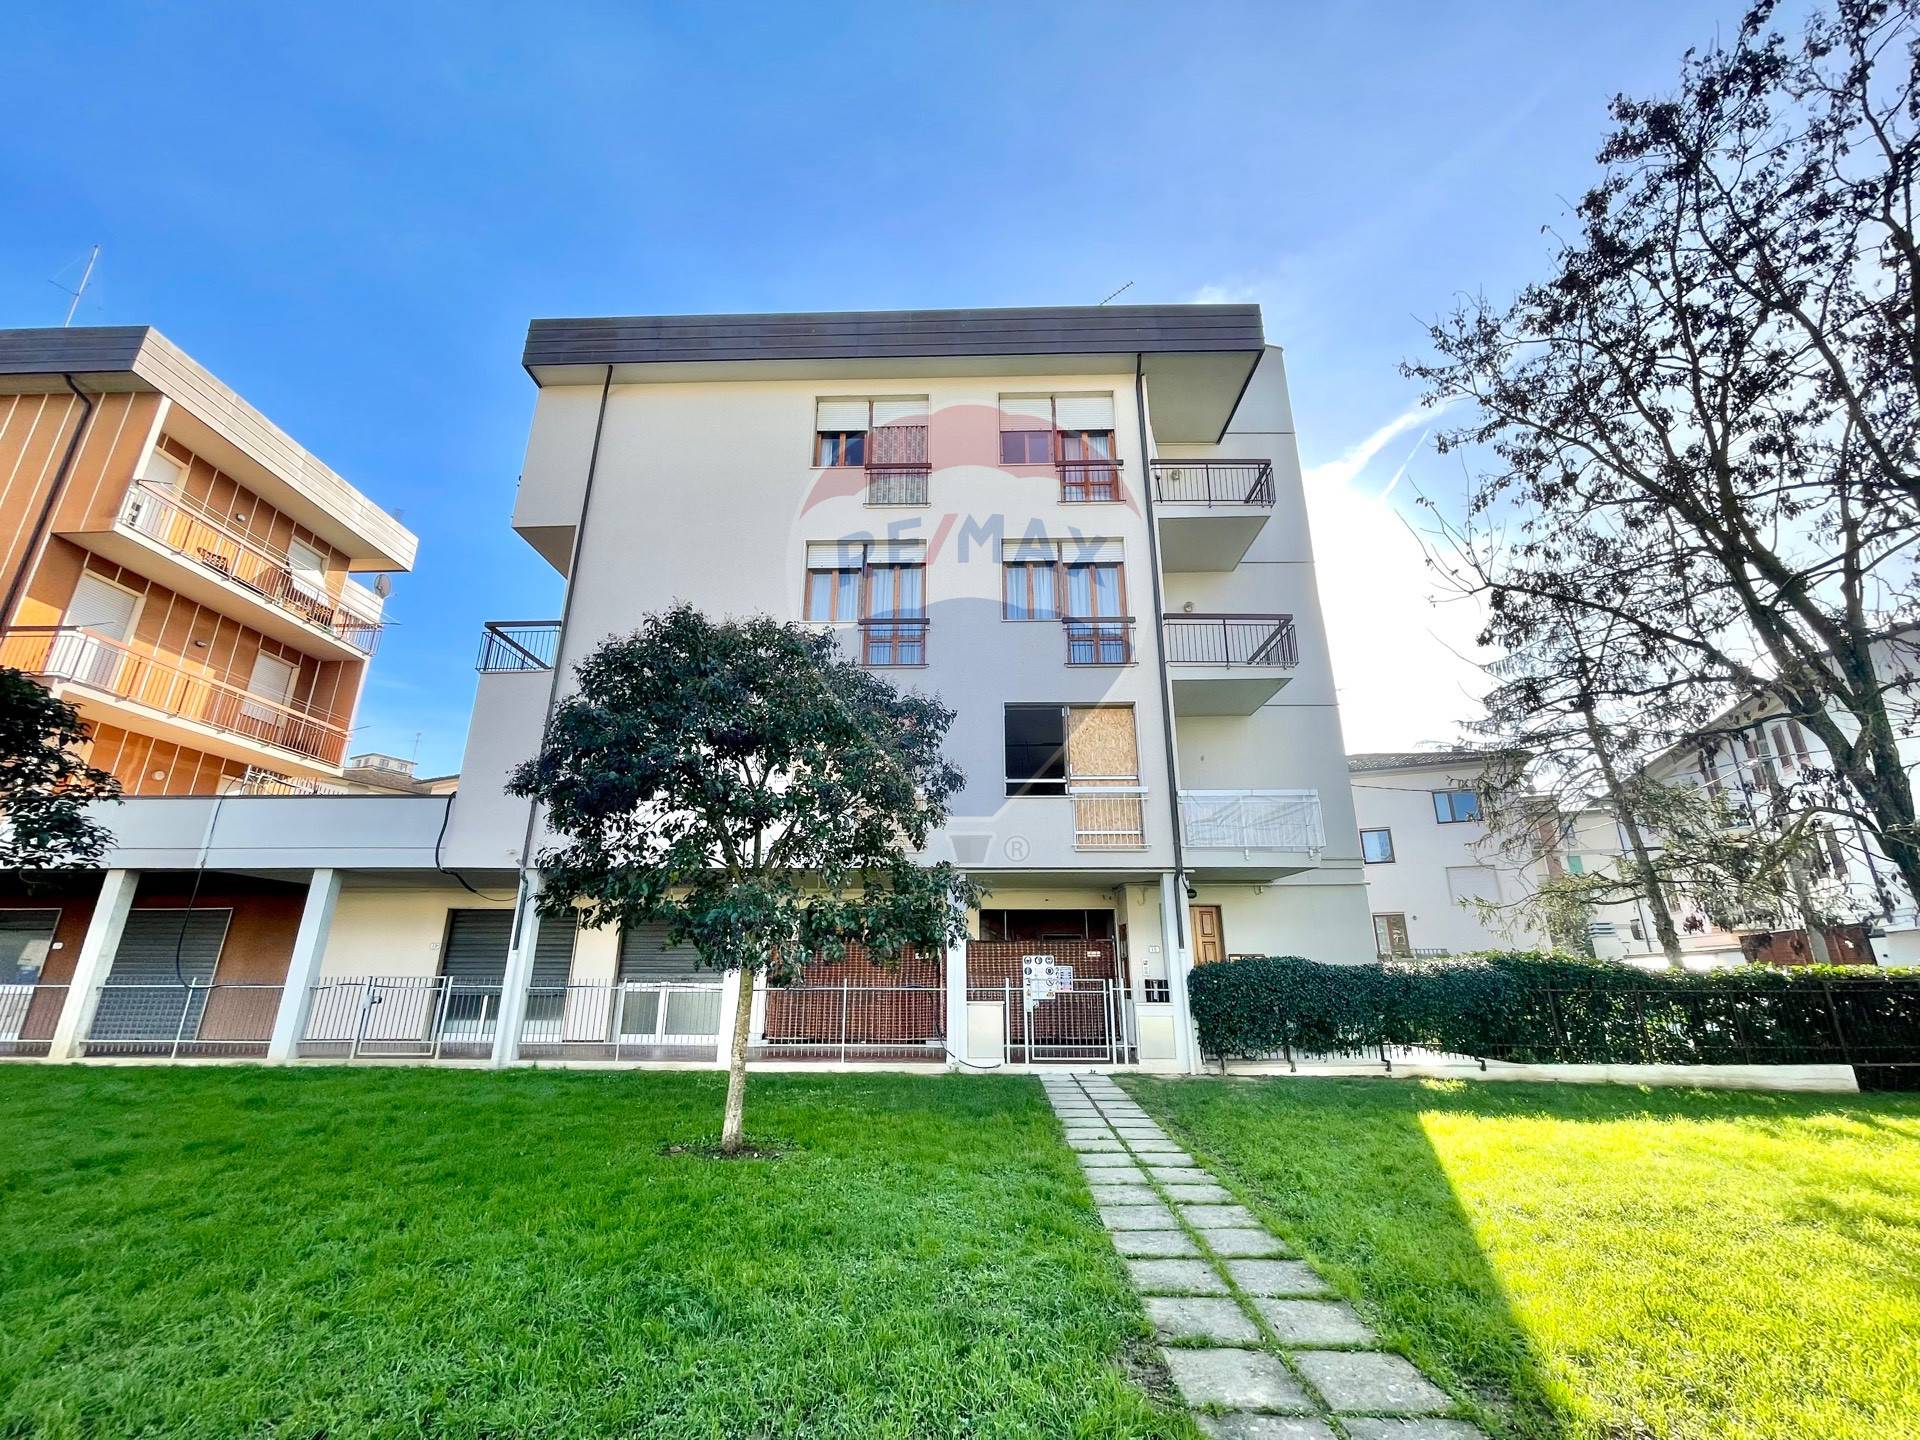 Appartamento in affitto a Castelfiorentino, 5 locali, prezzo € 700 | PortaleAgenzieImmobiliari.it